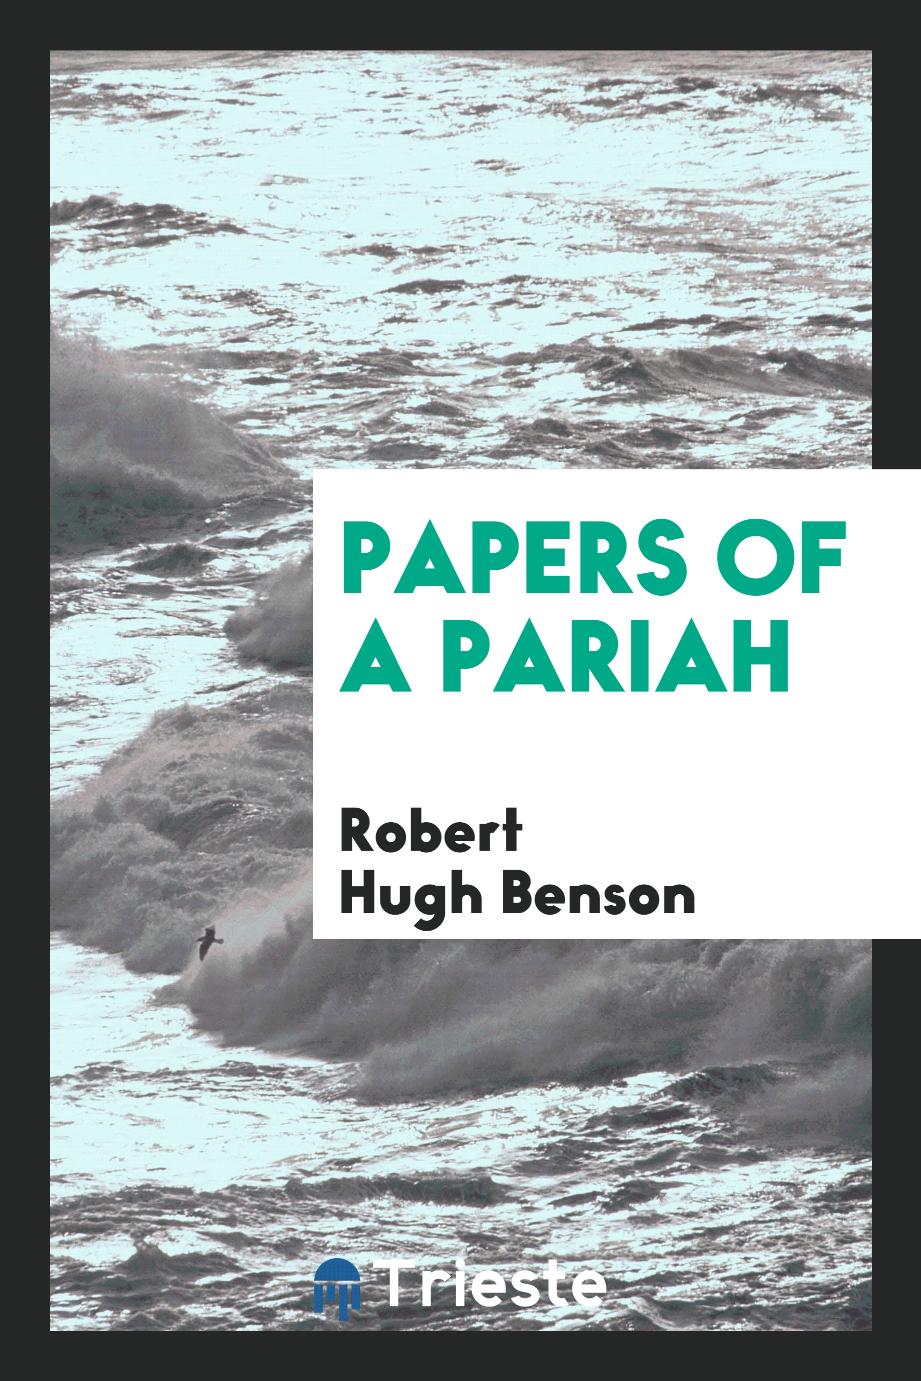 Robert Hugh Benson - Papers of a pariah